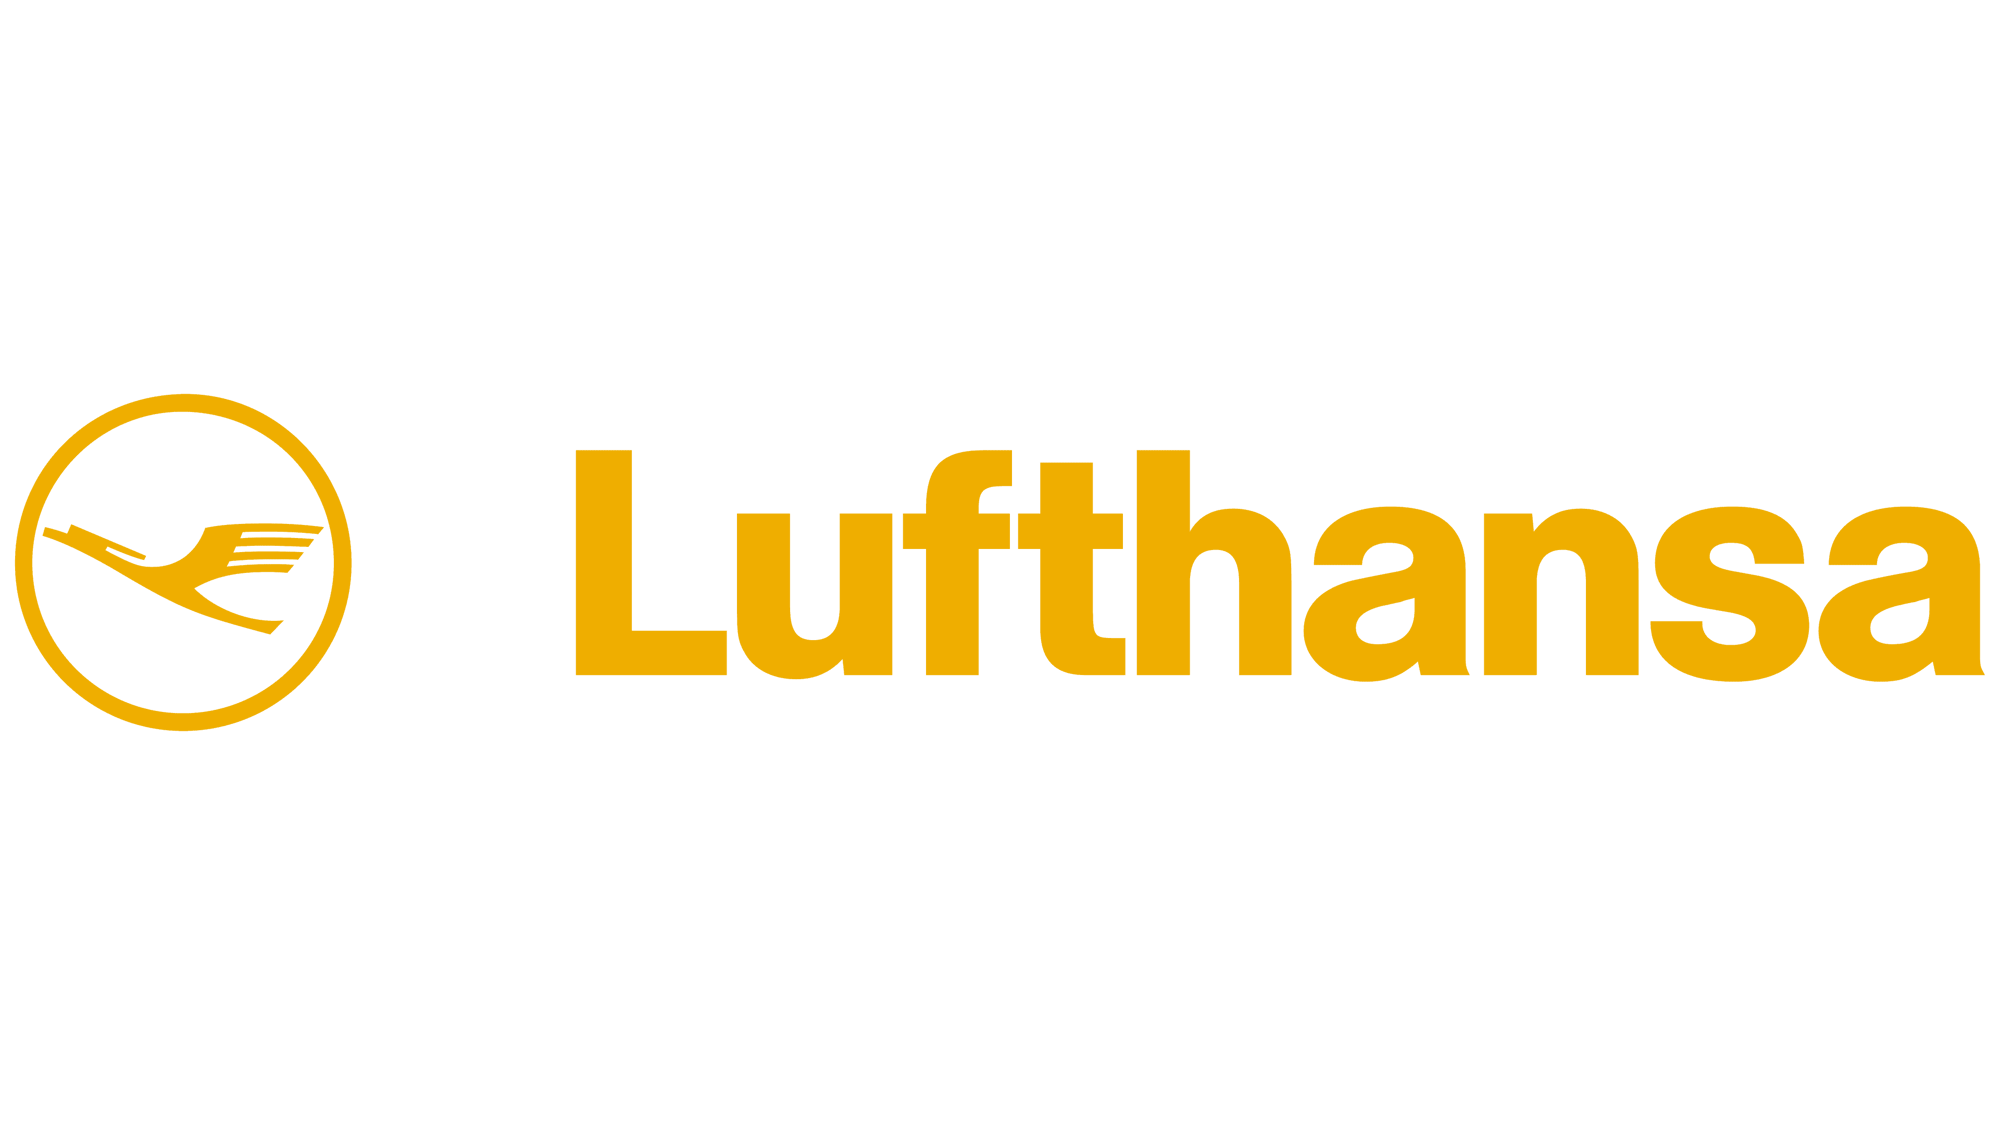 Lufthansa-Emblem